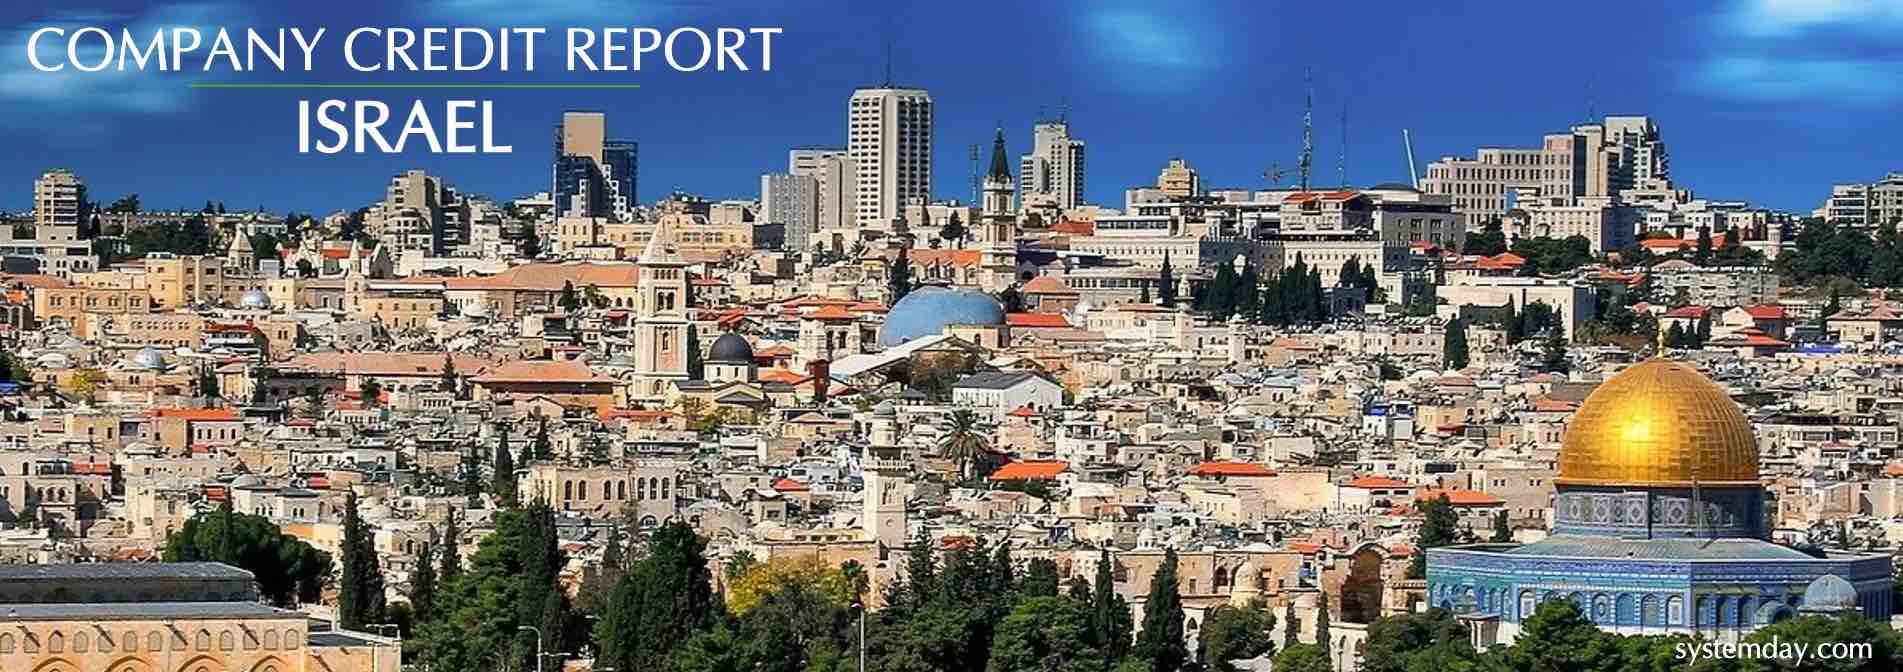 Israel Company Credit Report